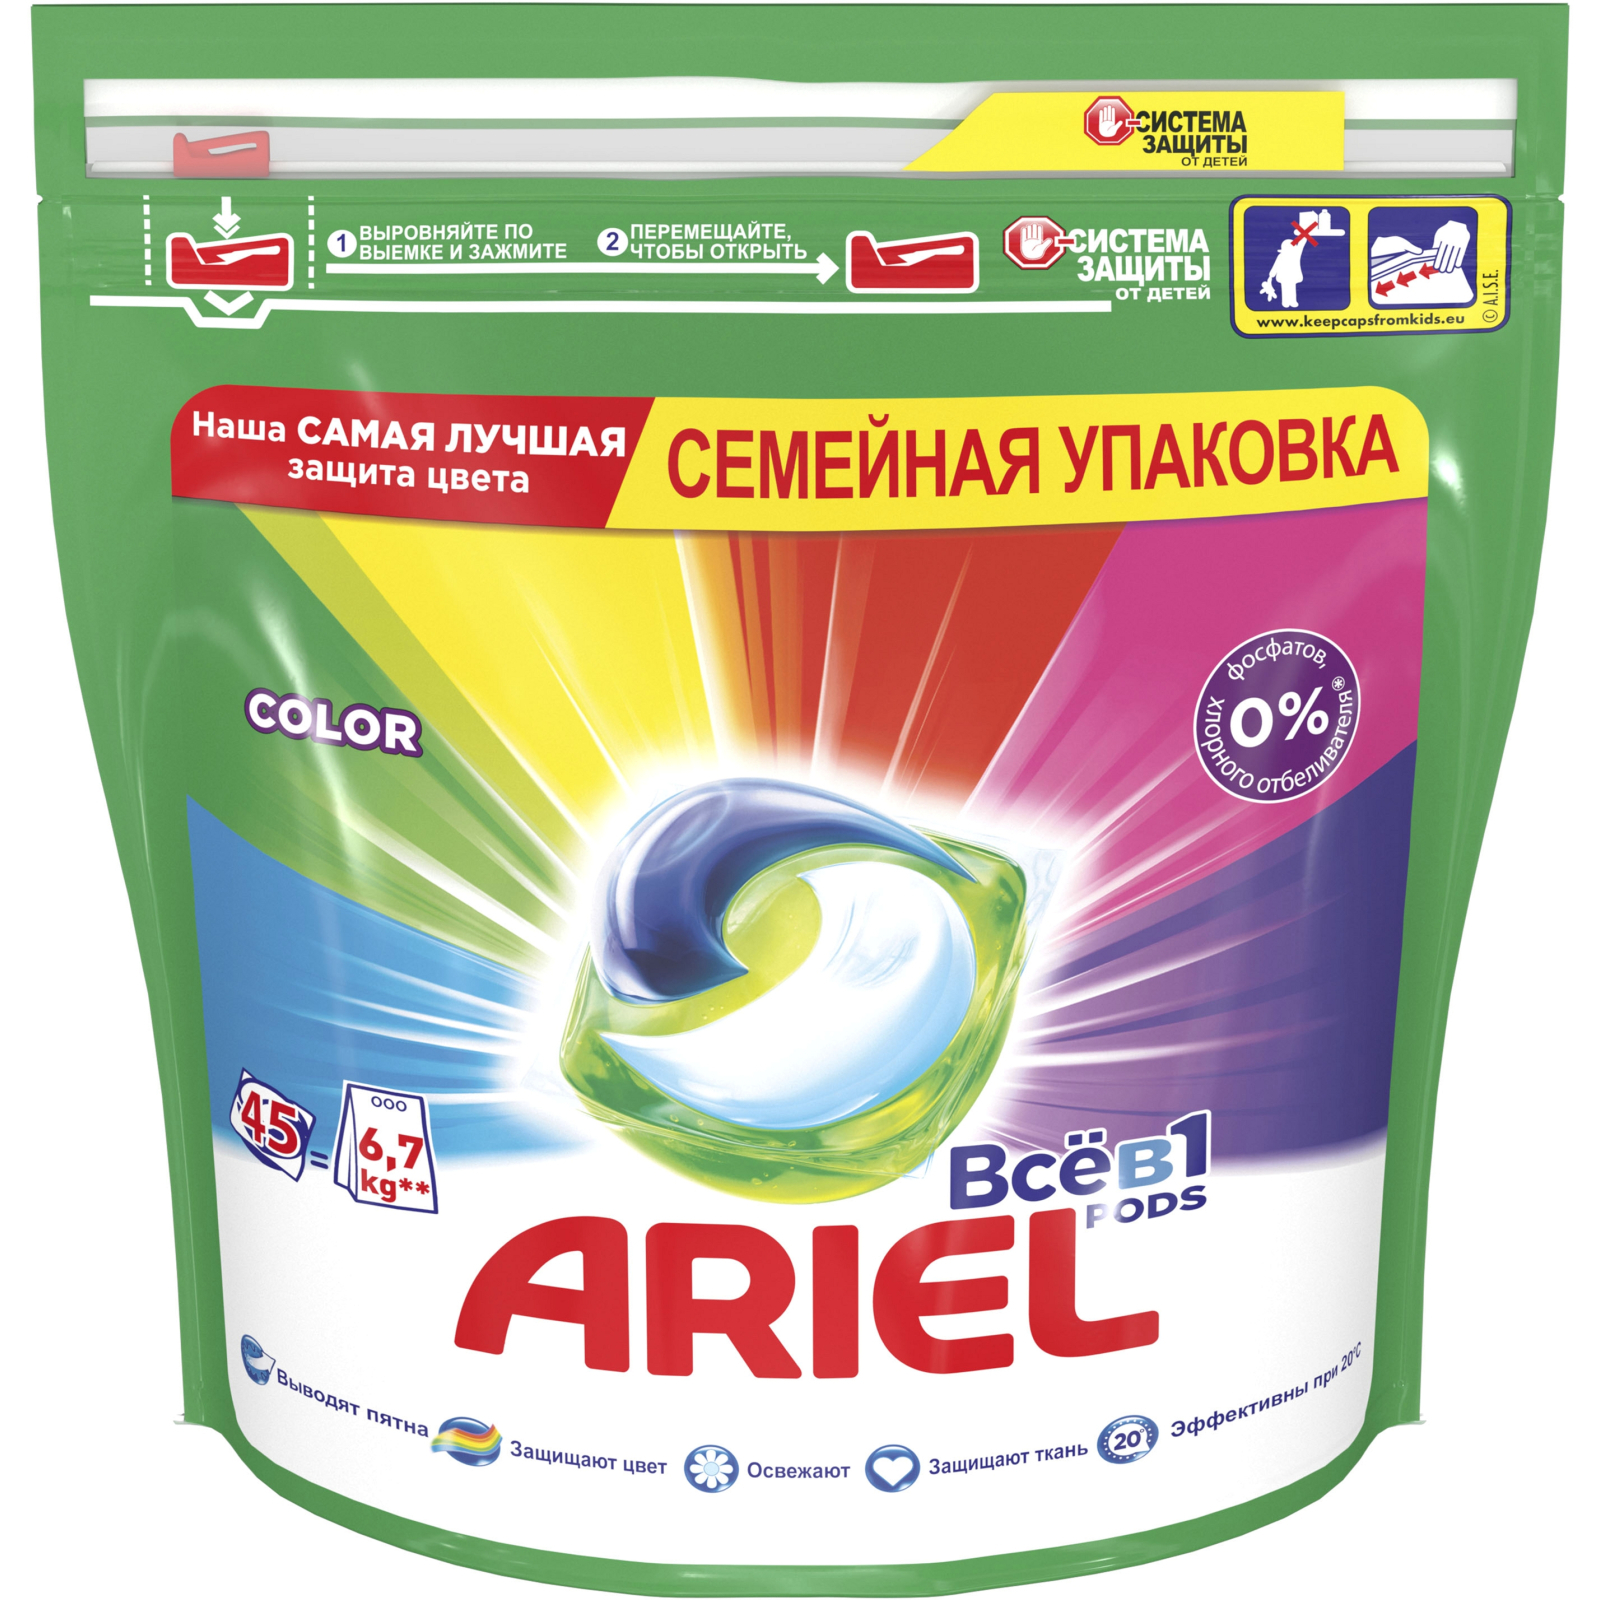 Капсули для прання Ariel Pods Все-в-1 Color 23 шт. (4084500078710)